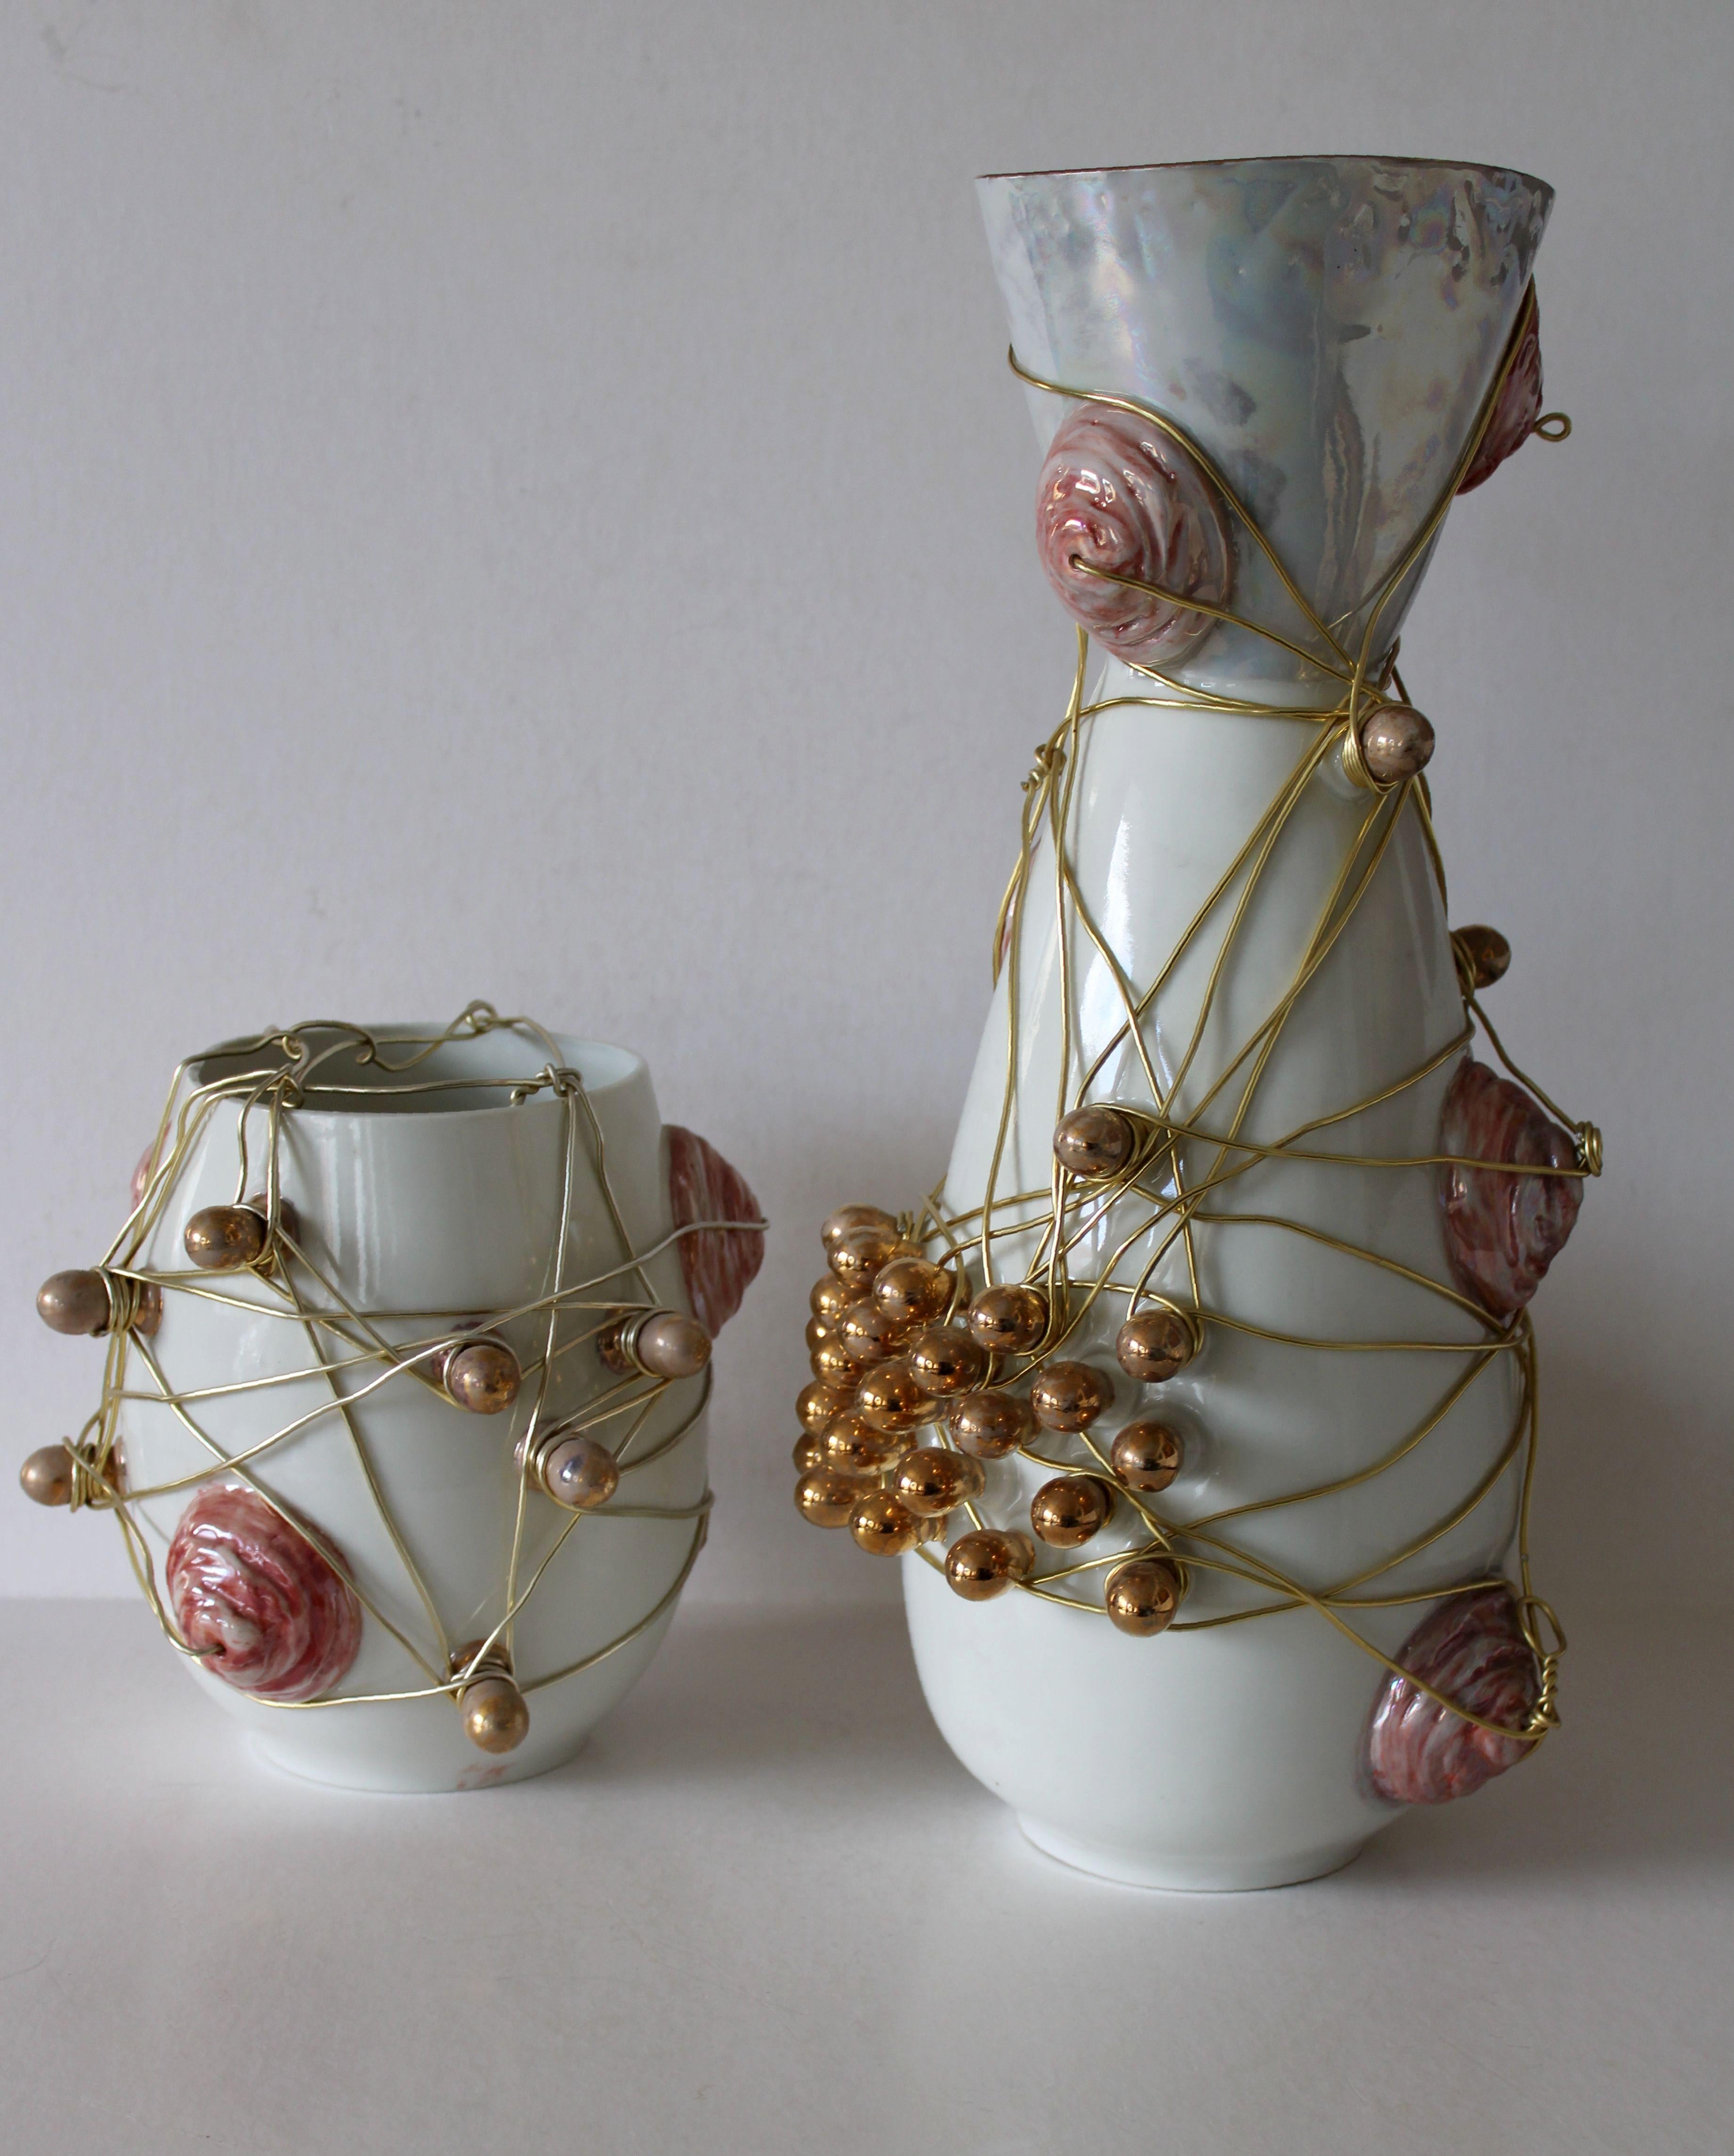 Vases avec fils - ensemble de deux  Porcelaine, fil métallique, H 19,5 cm, H 43 cm, 2009,